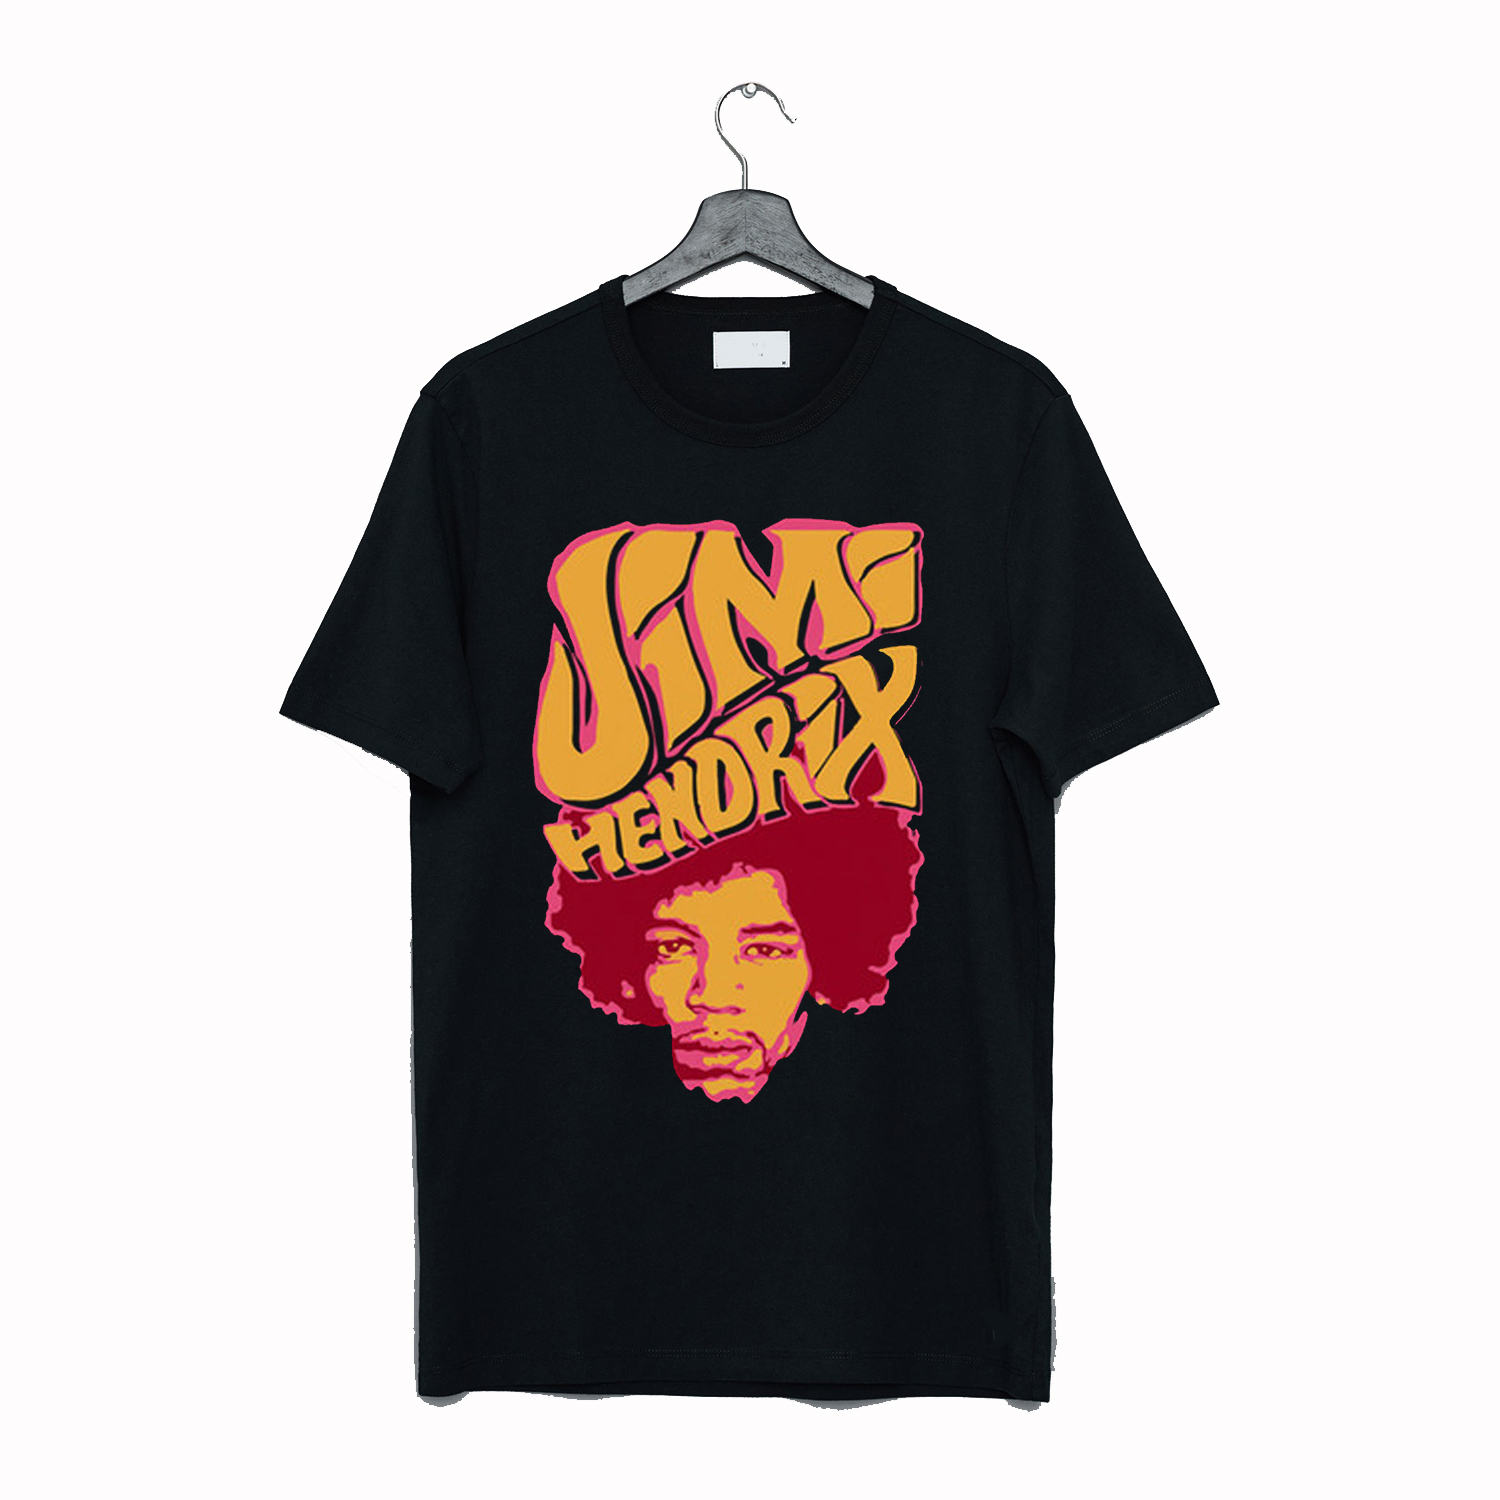 Jimi Hendrix Black T-Shirt AI